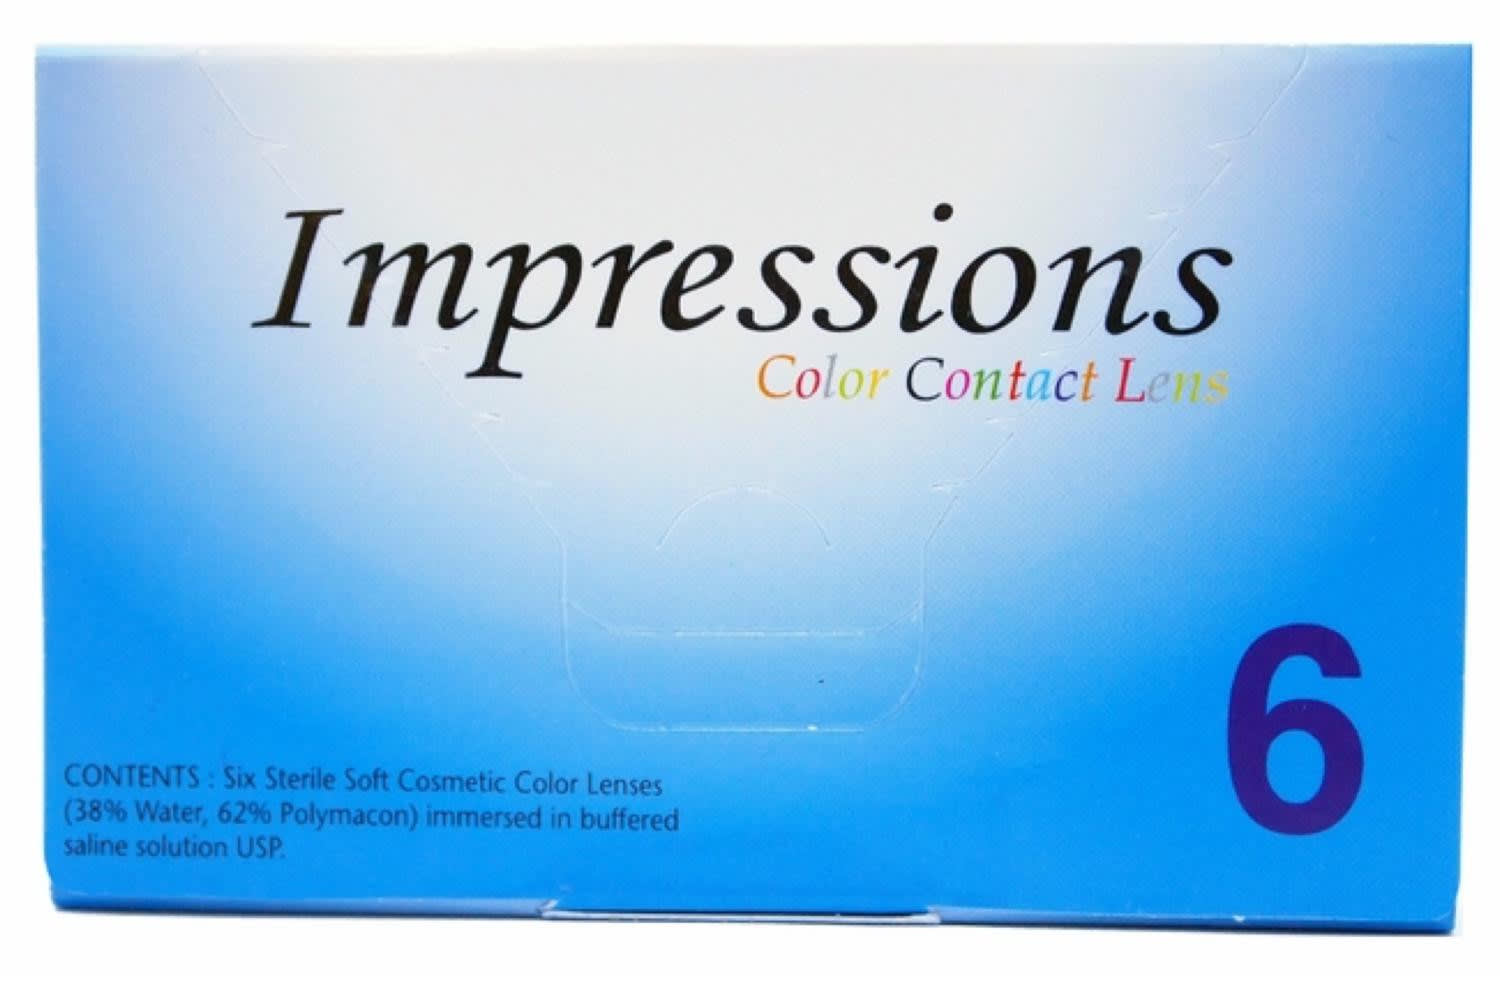 Impressions colors contacts